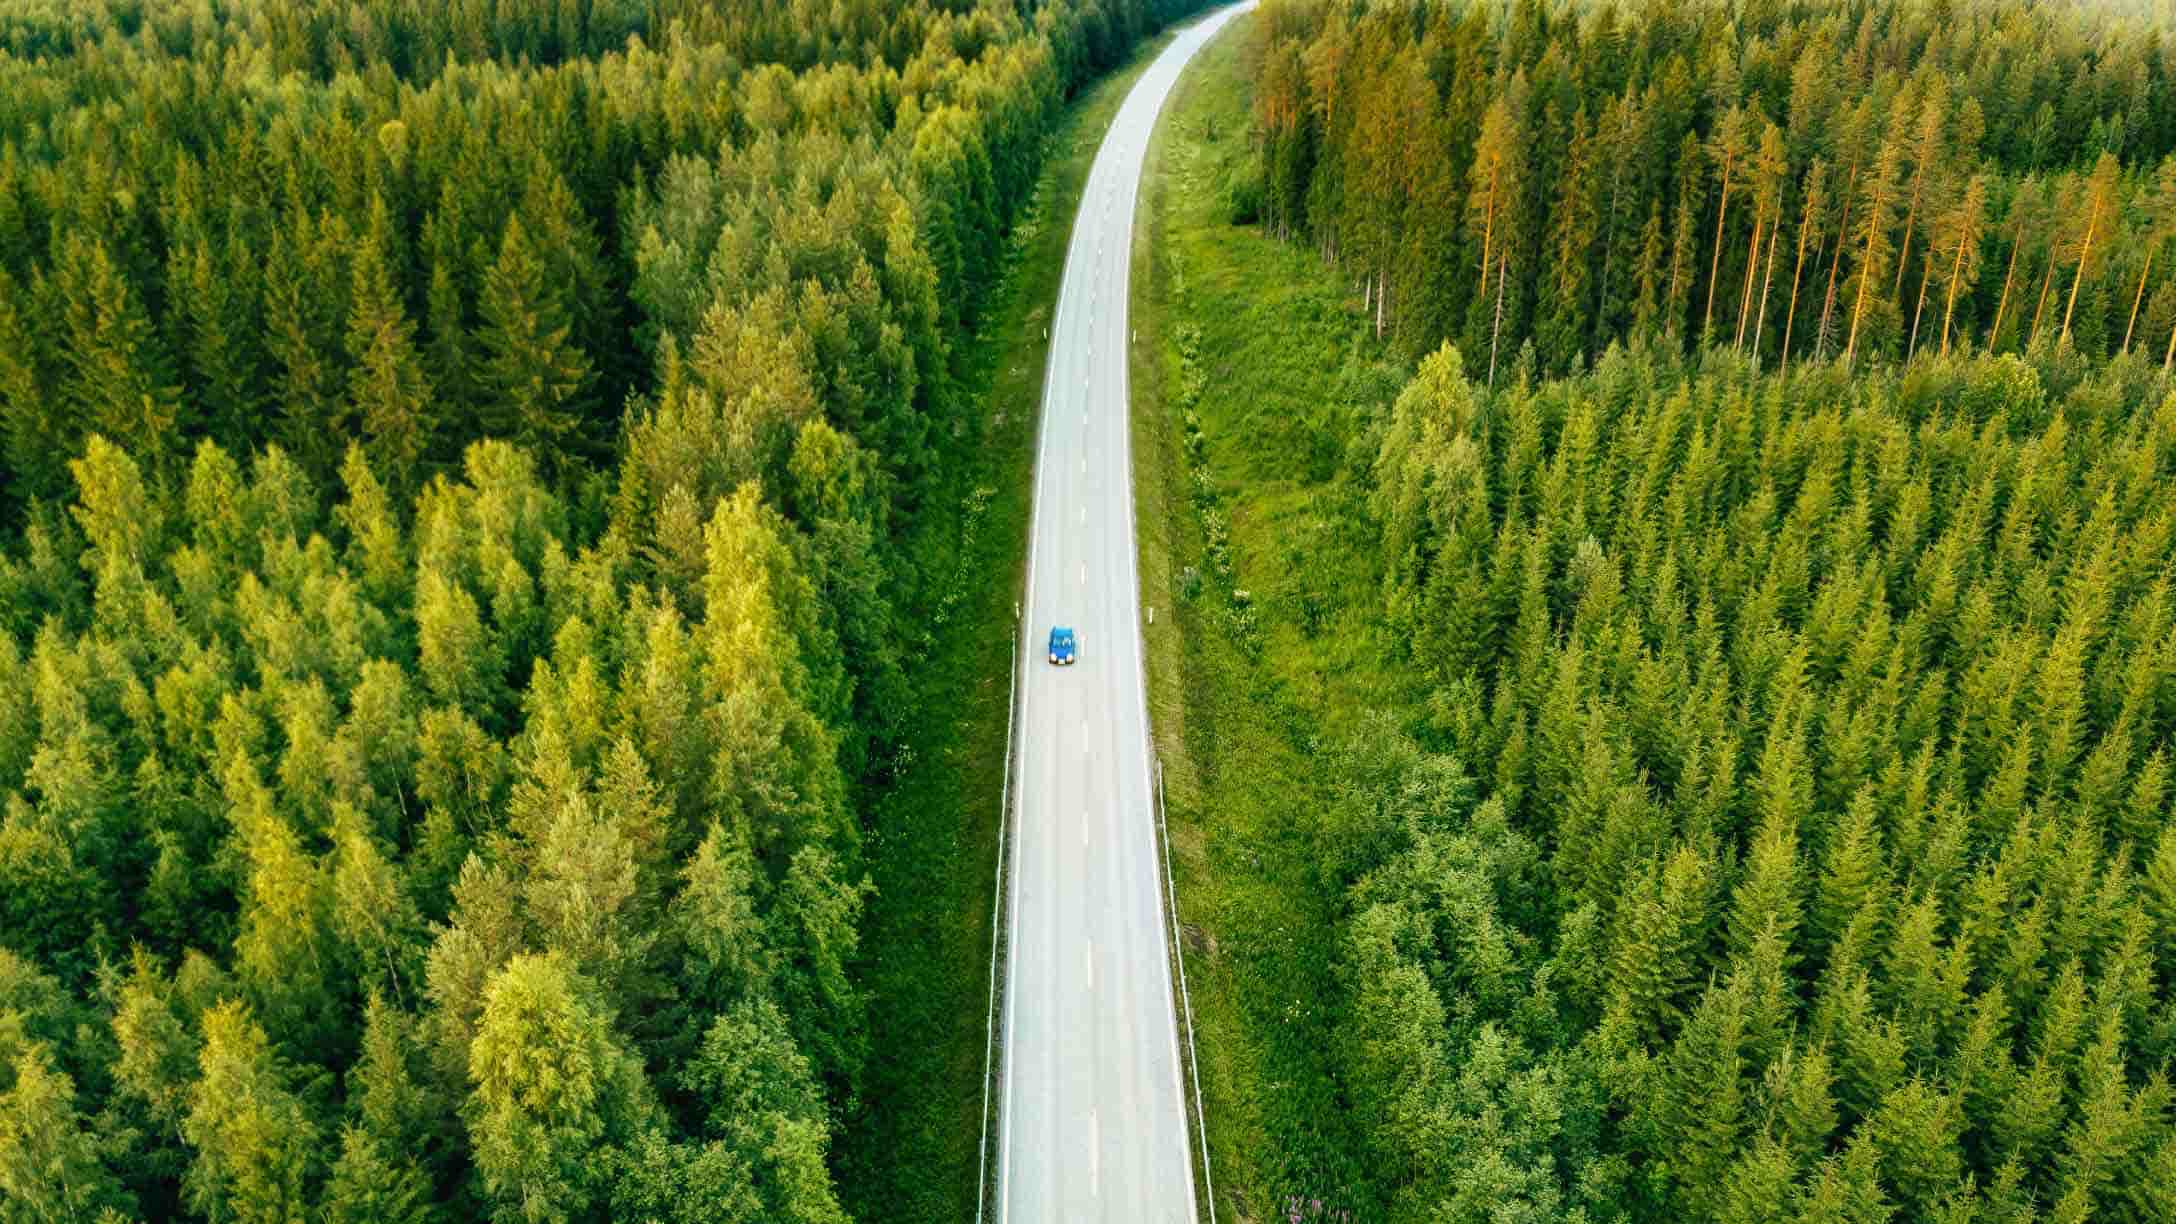 Vehículo cruzando una carretera en un bosque